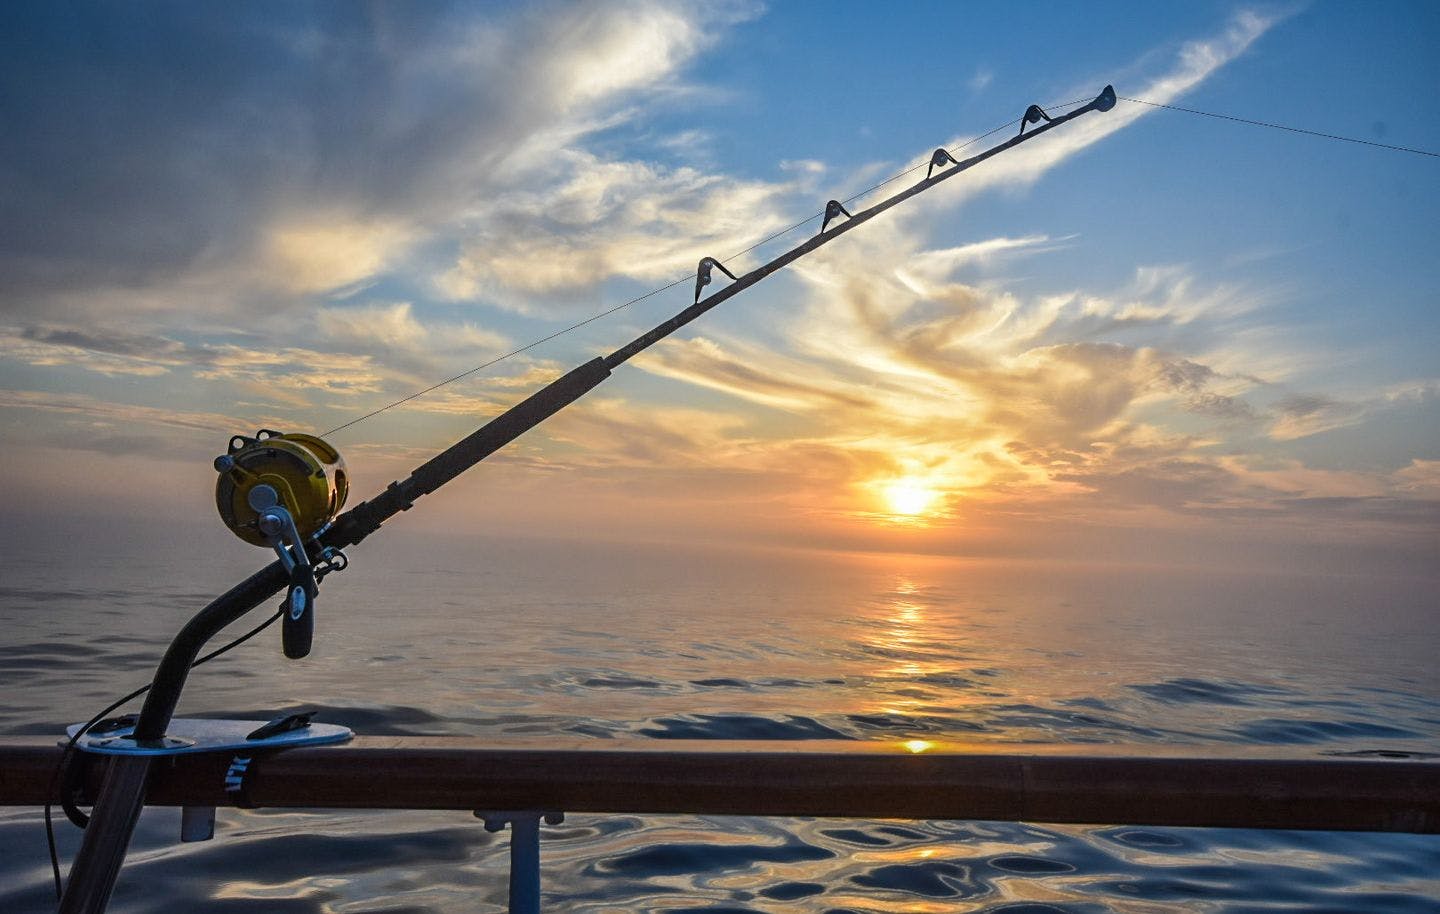 Fishing in the sunset Photo: Jesper Rosenmai